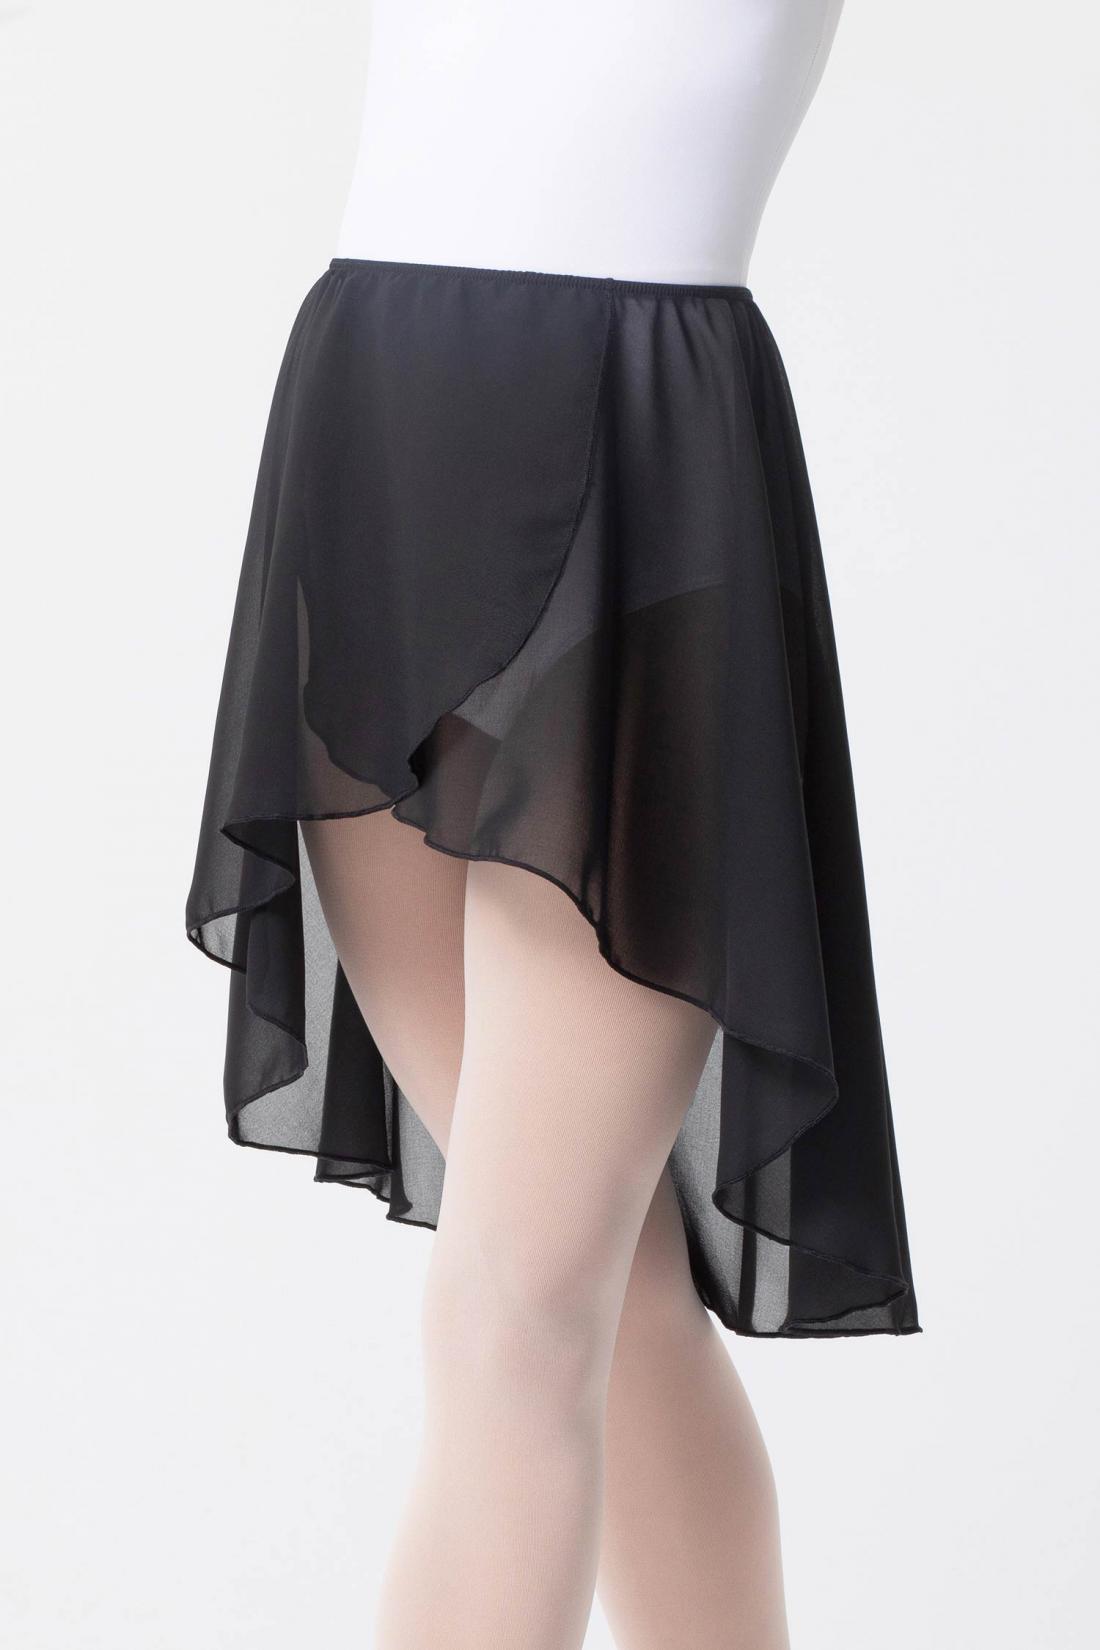 Intermezzo tail hem black skirt elastic waist ballet dance